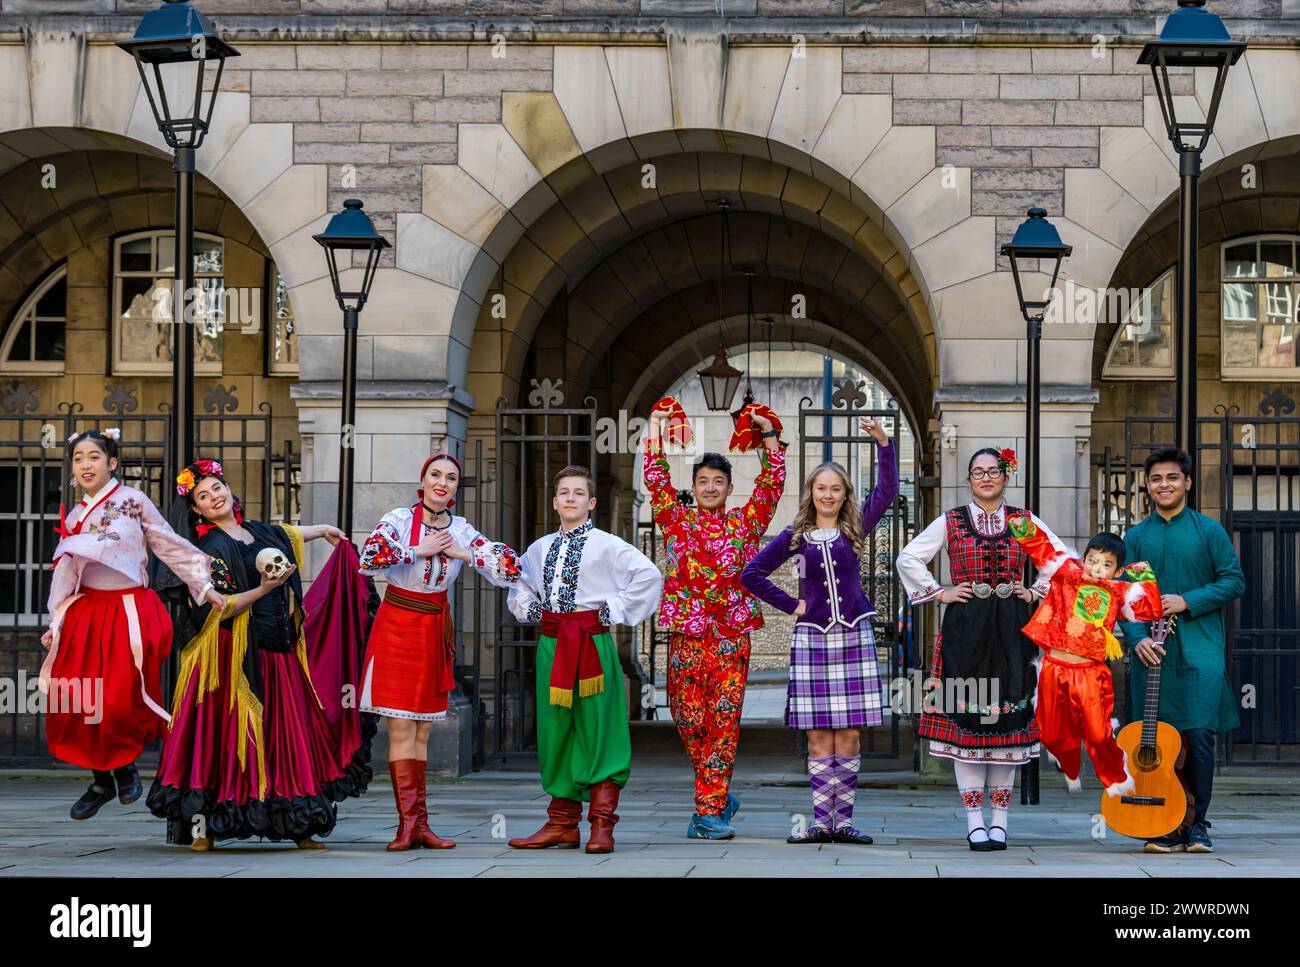 Les danseurs traditionnels en costume national lancent le Festival des grenades, Édimbourg, Écosse, Royaume-Uni Banque D'Images